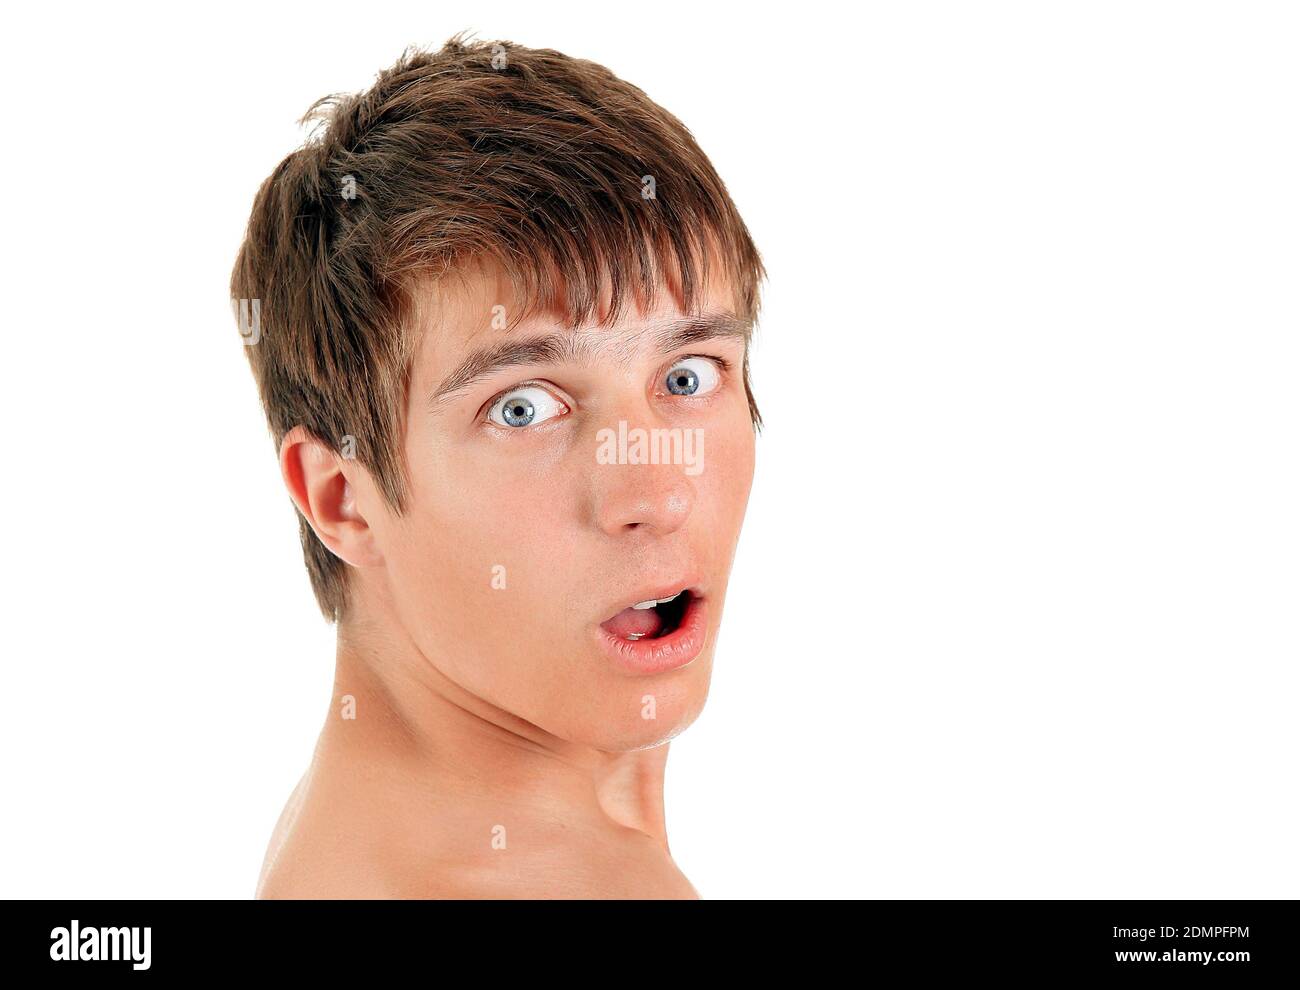 Überrascht junger Mann isoliert auf dem weißen Hintergrund Stockfoto